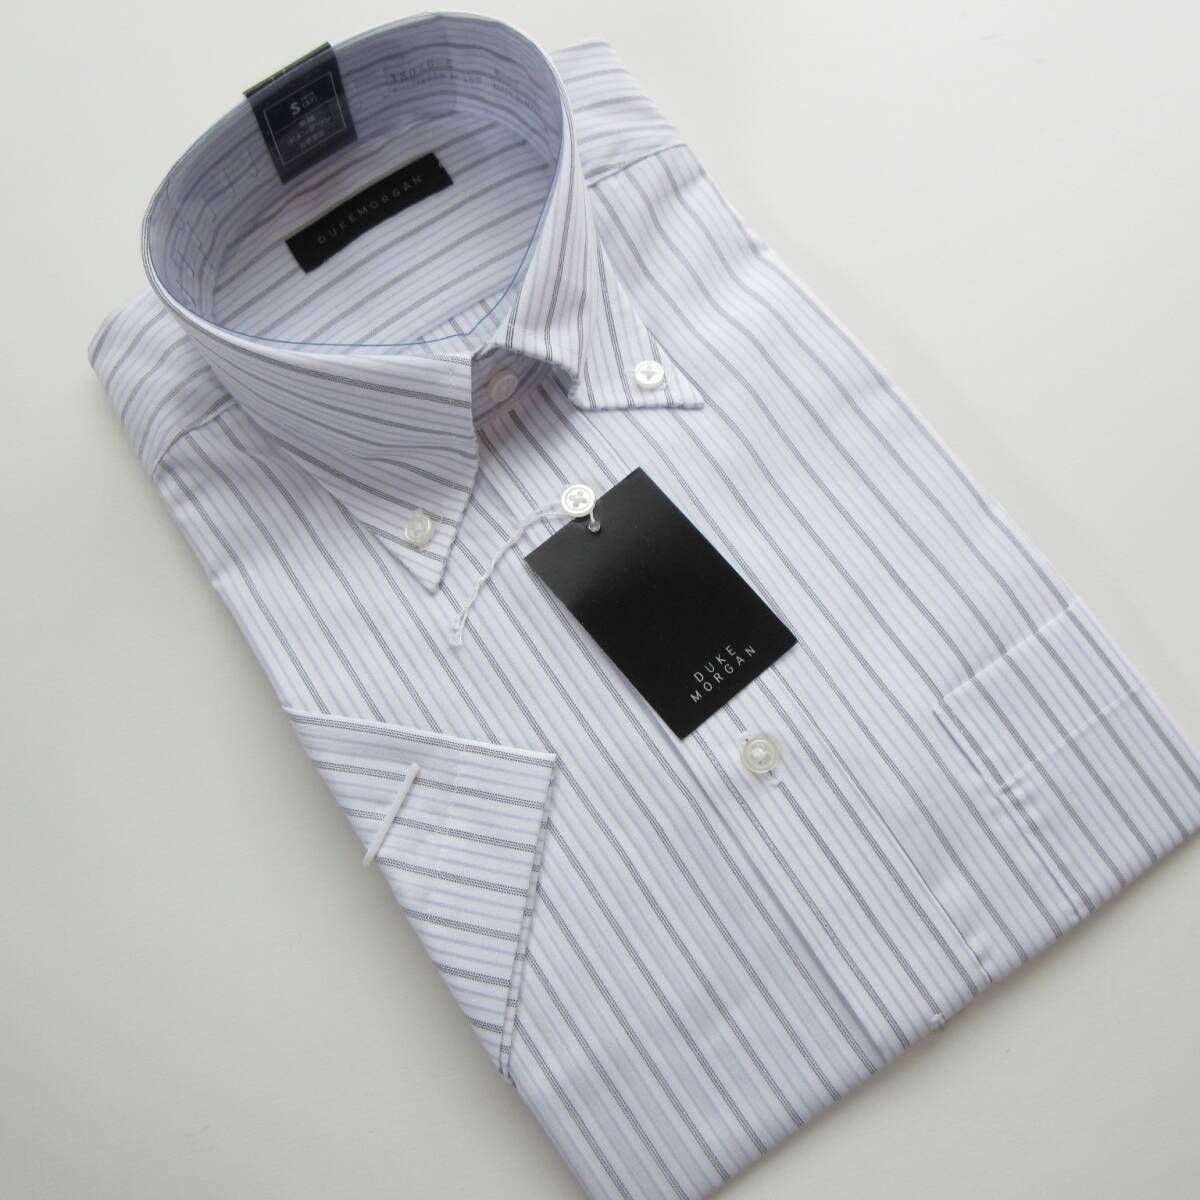 【半袖】◆DUKE MORGAN コナカ ボタンダウンドレスワイシャツ Sサイズ 形態安定加工 ビジネスシャツ 37 紳士服のコナカ_画像7